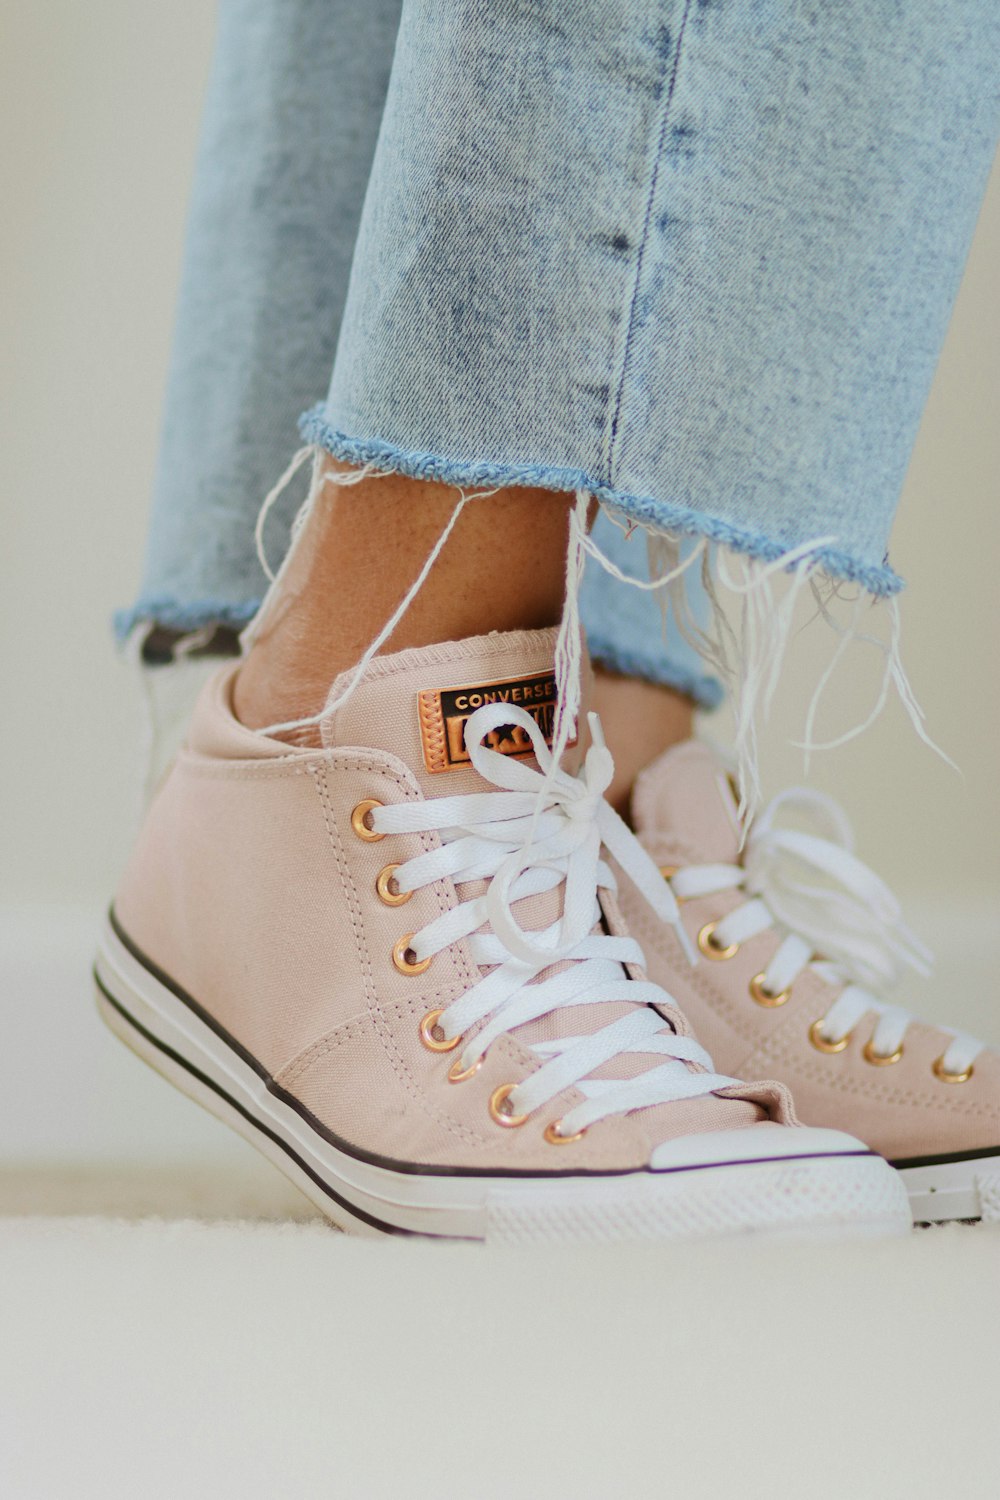 Un primo piano dei piedi di una persona che indossa scarpe da ginnastica  rosa foto – Scarpa Immagine gratuita su Unsplash